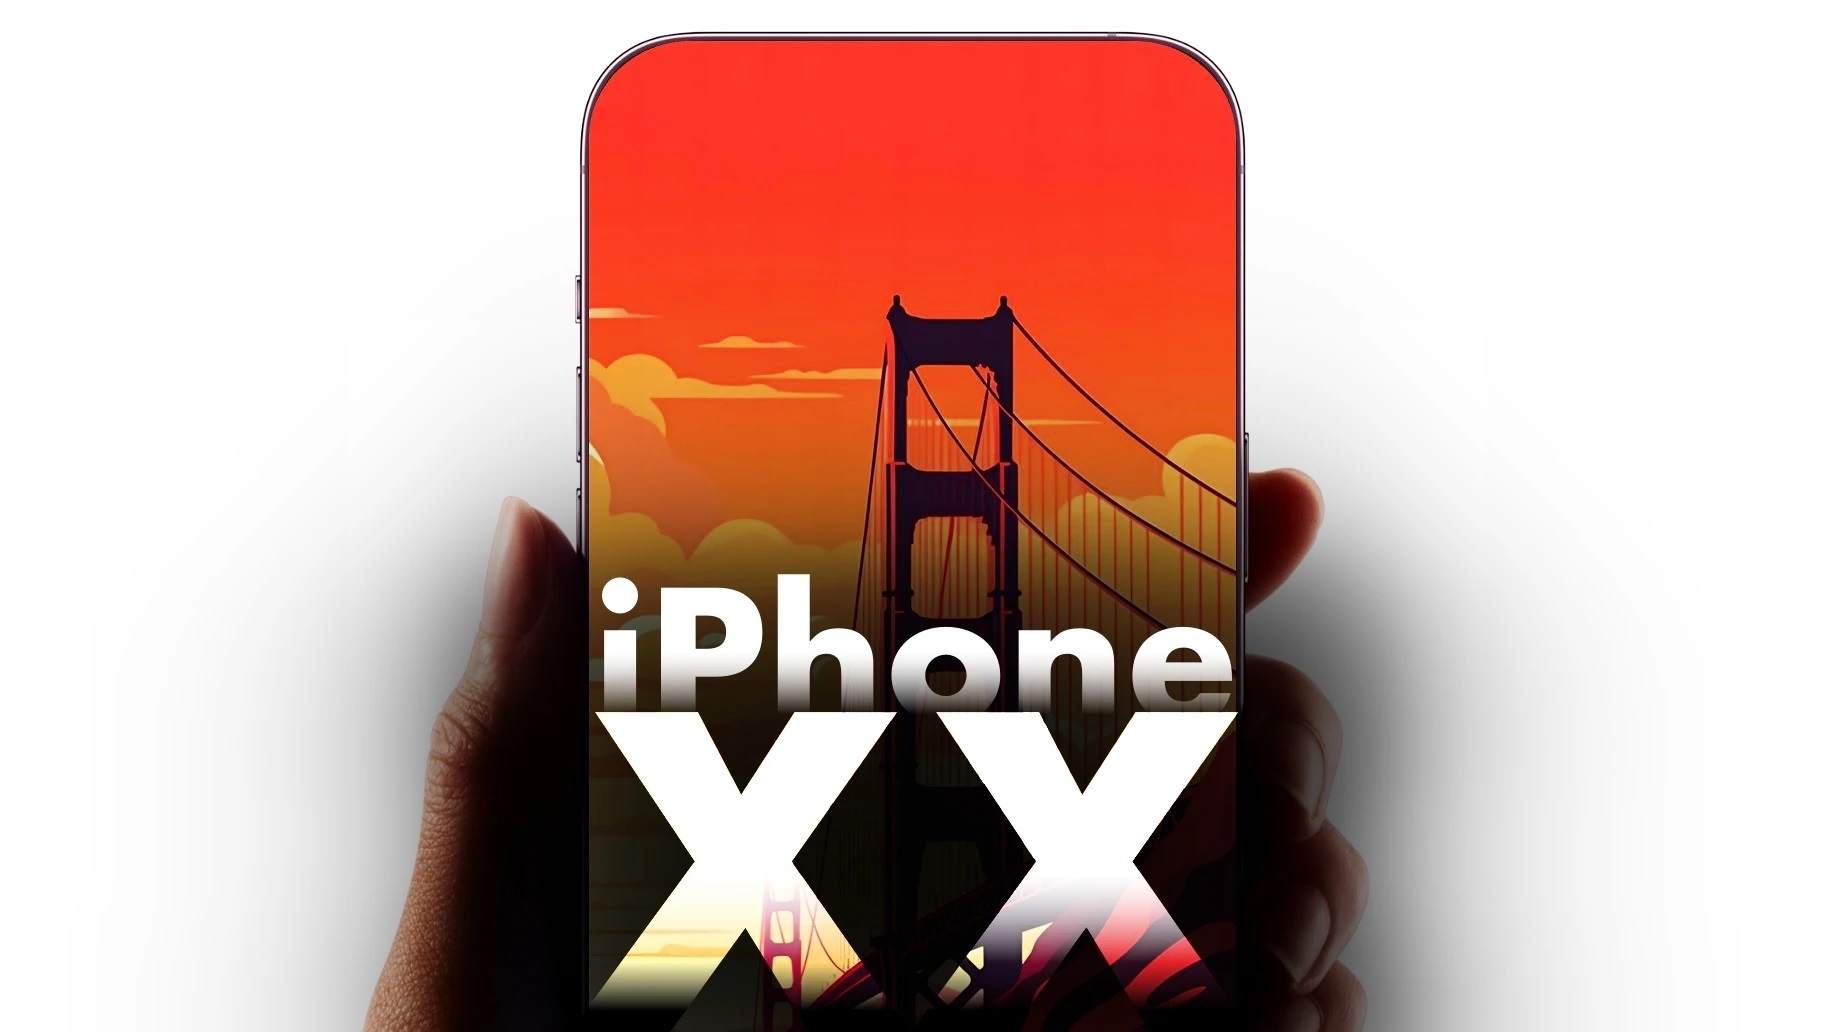 iPhone XX "đẹp như khối pha lê" sẽ là kiệt tác 10 năm của Apple: Cú nổ lớn khiến thế giới sửng sốt? - Ảnh 2.